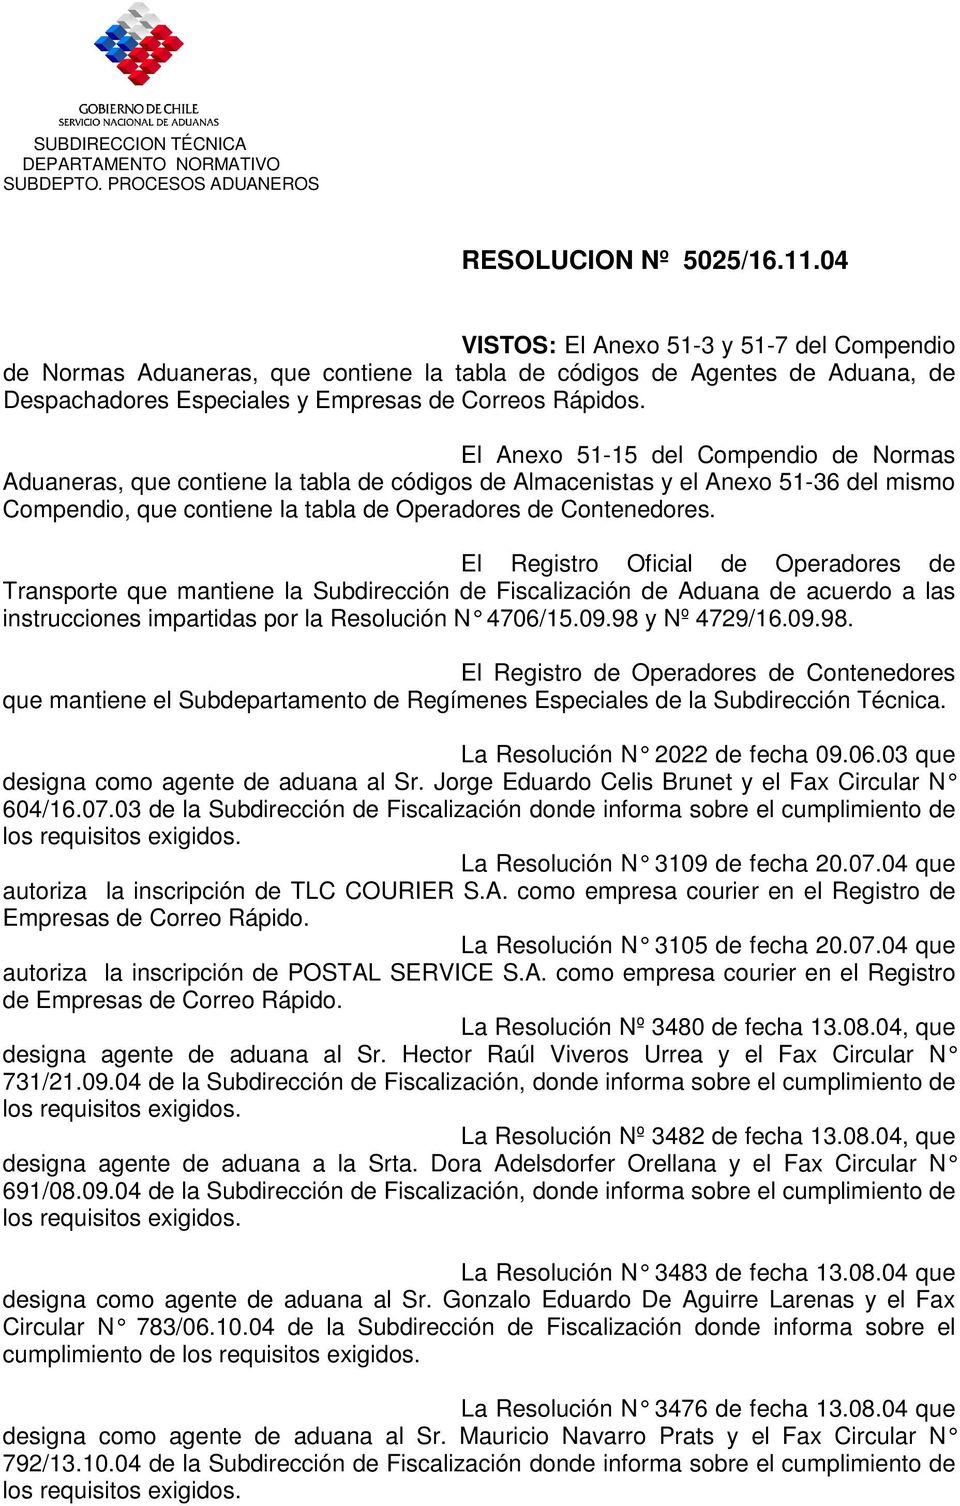 El Anexo 51-15 del Compendio de Normas Aduaneras, que contiene la tabla de códigos de Almacenistas y el Anexo 51-36 del mismo Compendio, que contiene la tabla de Operadores de Contenedores.